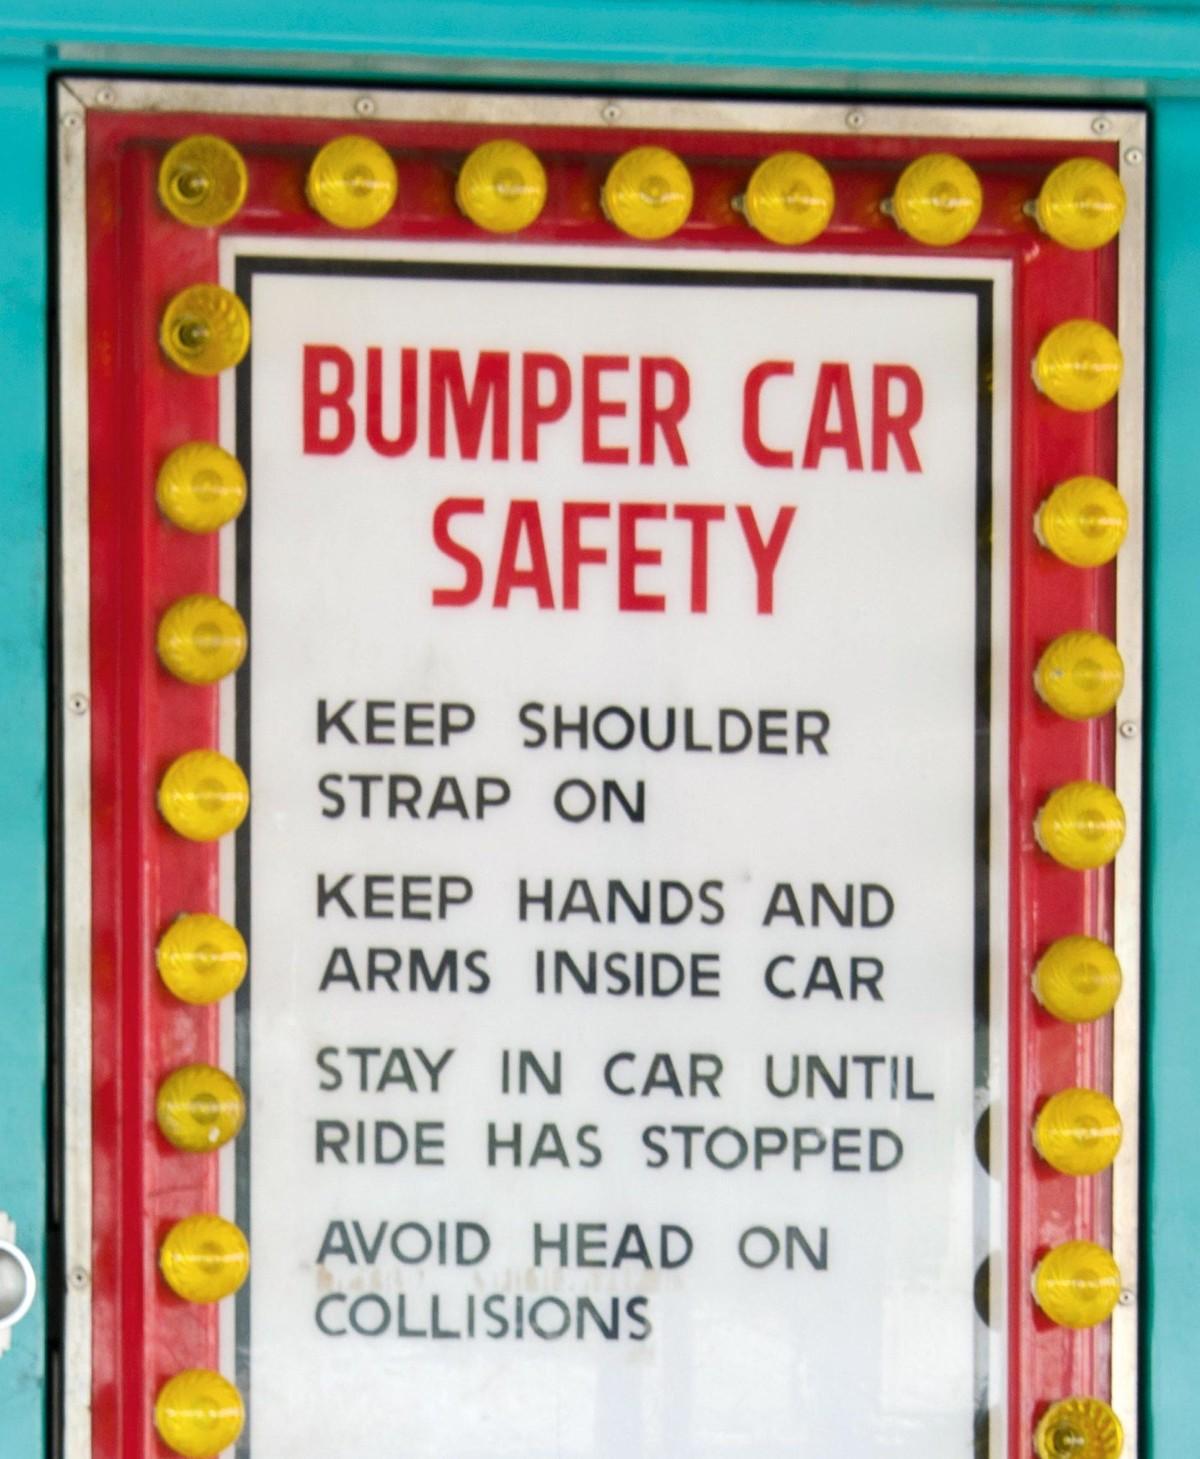 Bumper car safety